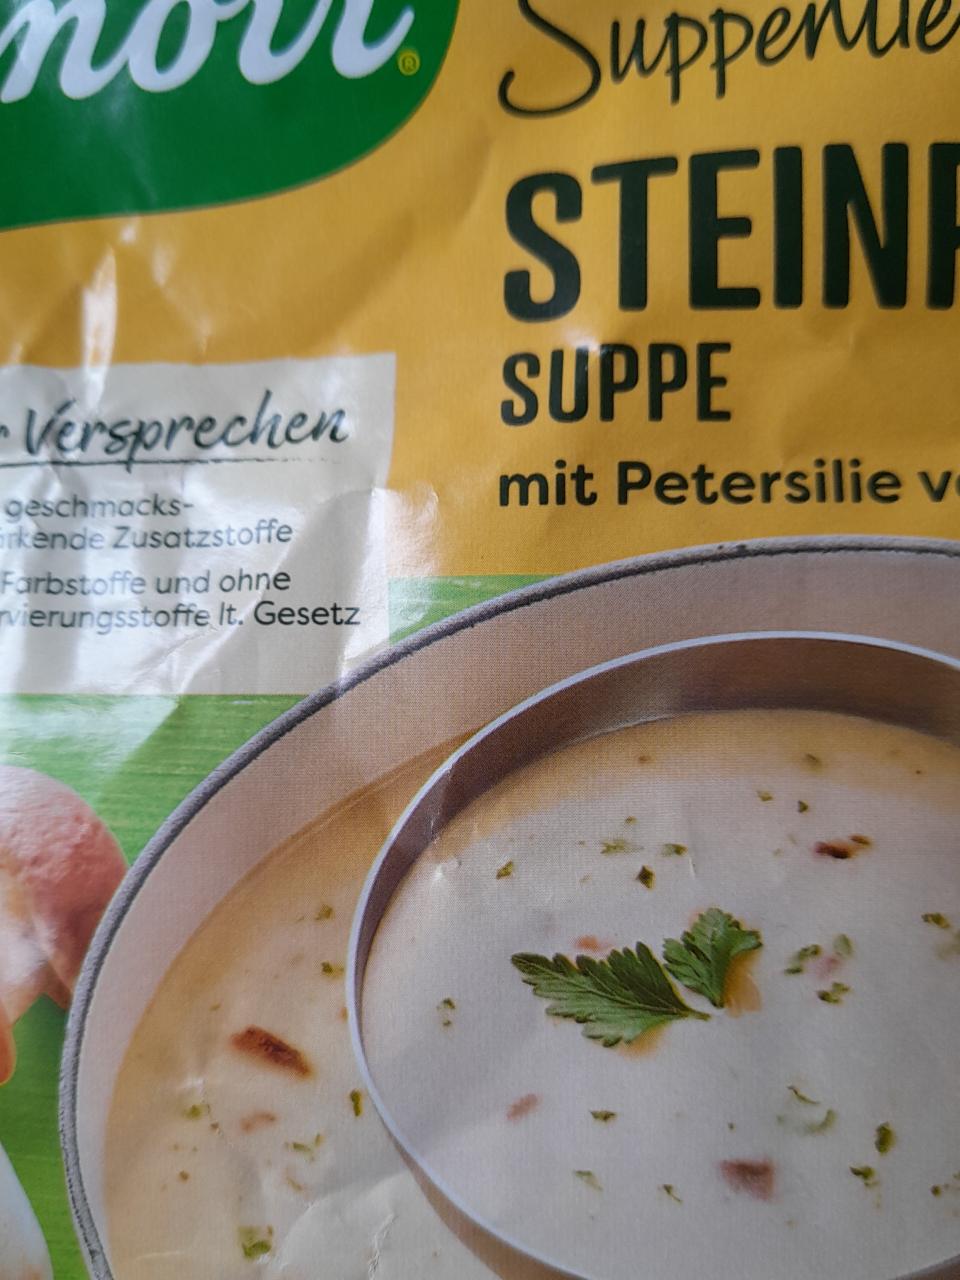 Фото - Суп грибной с петрушкой быстрого приготовления Steinpilzsuppe Knorr